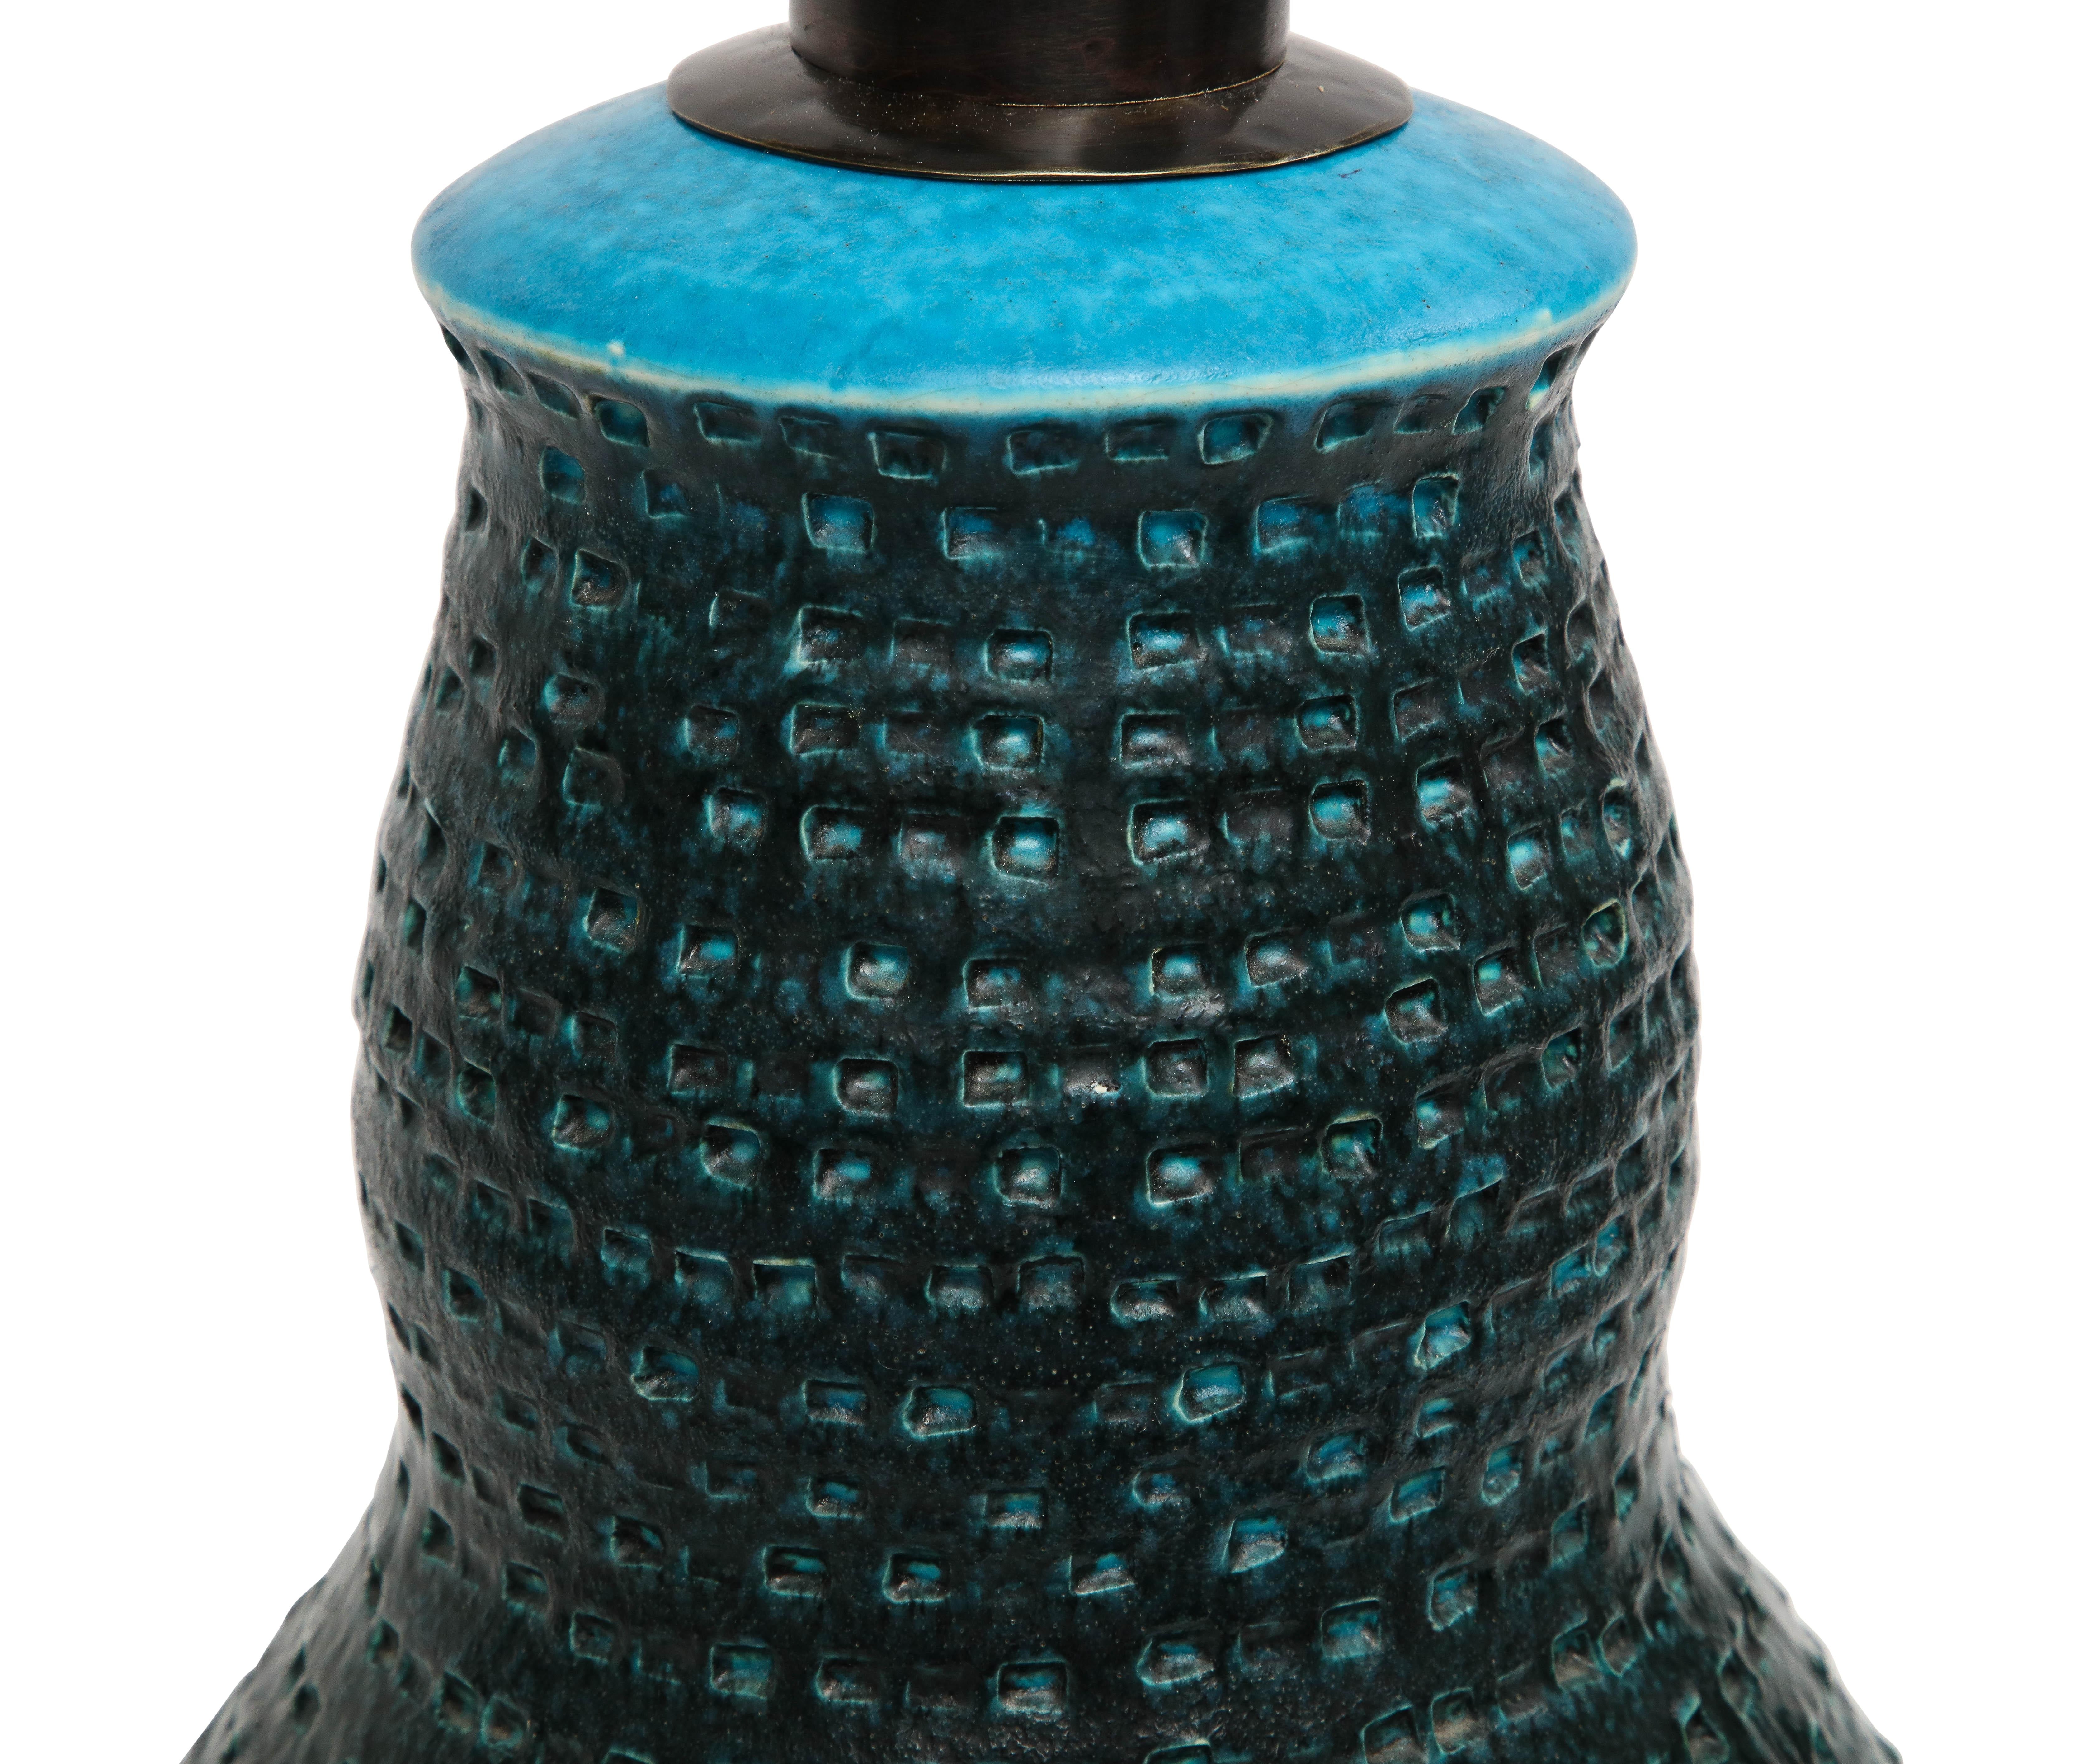 Alvino Bagni Table Lamp, Ceramic, Blue, Black, Impressed 4